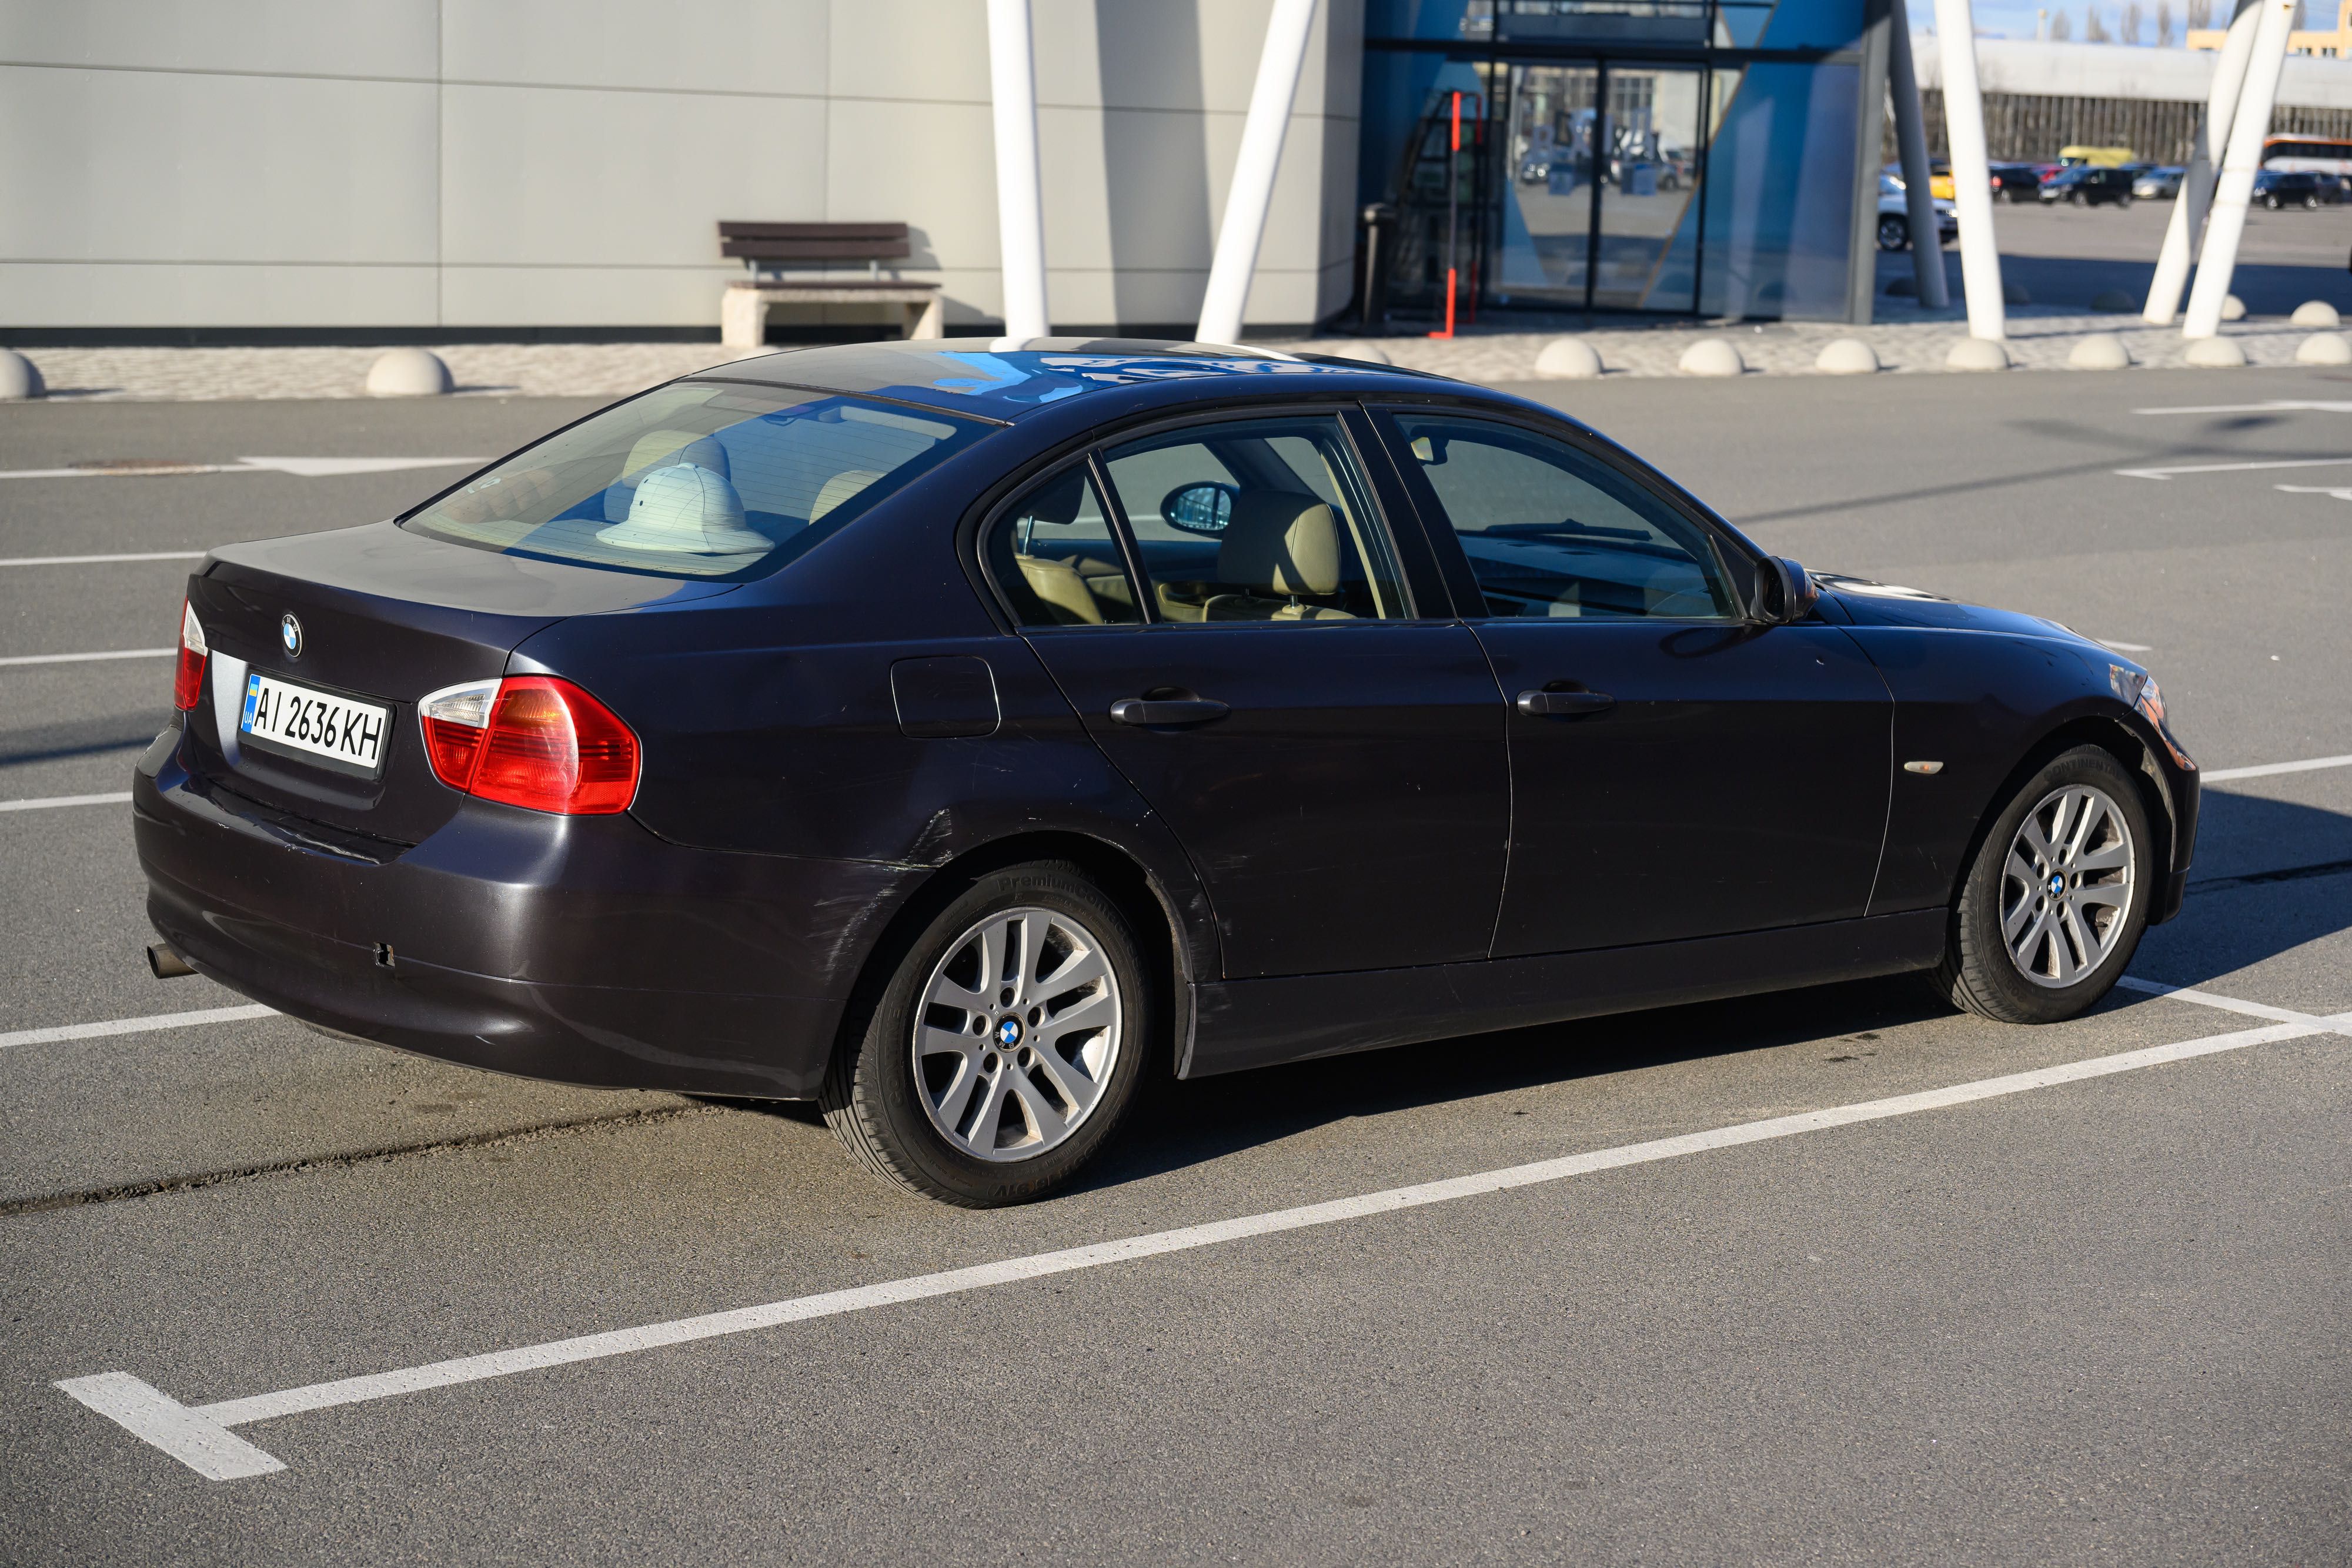 BMW 318i  2006р, бензин 2.0. Автомат